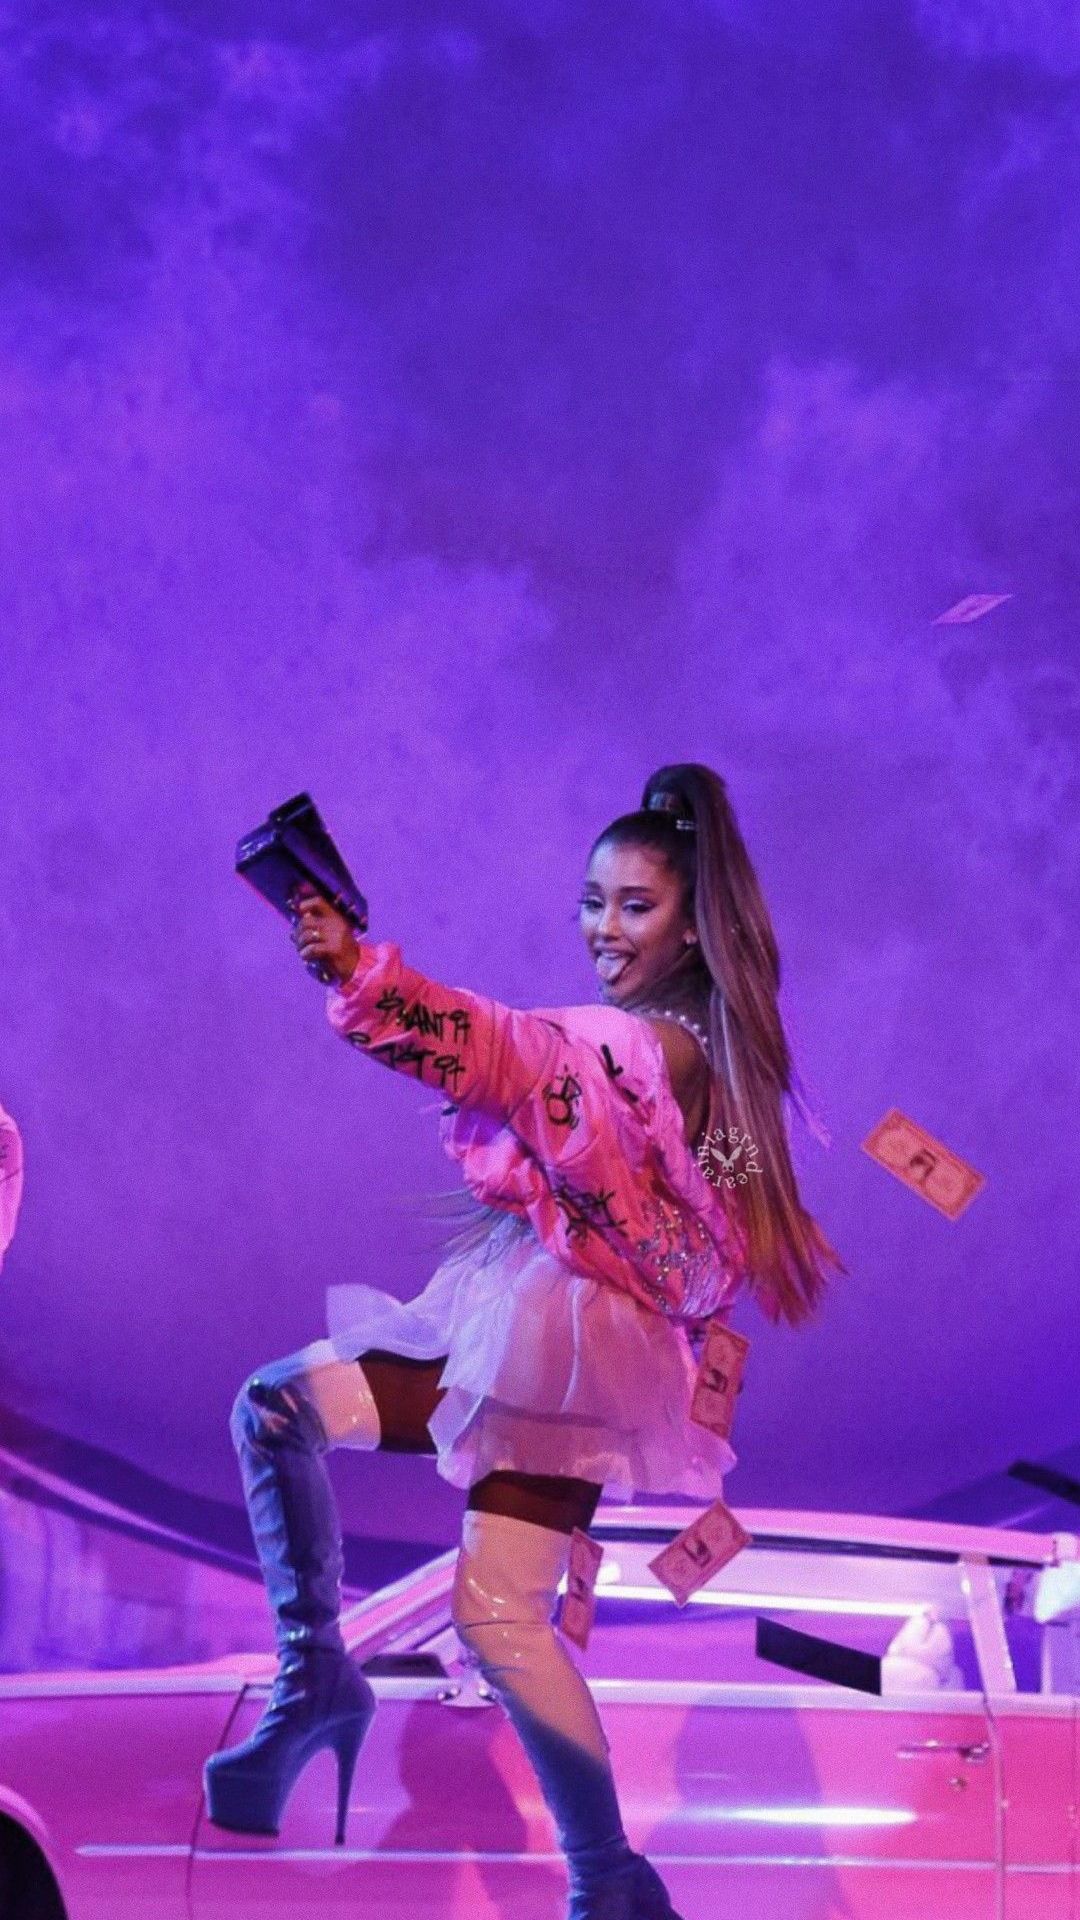 Free download ARI in 2019 Ariana grande